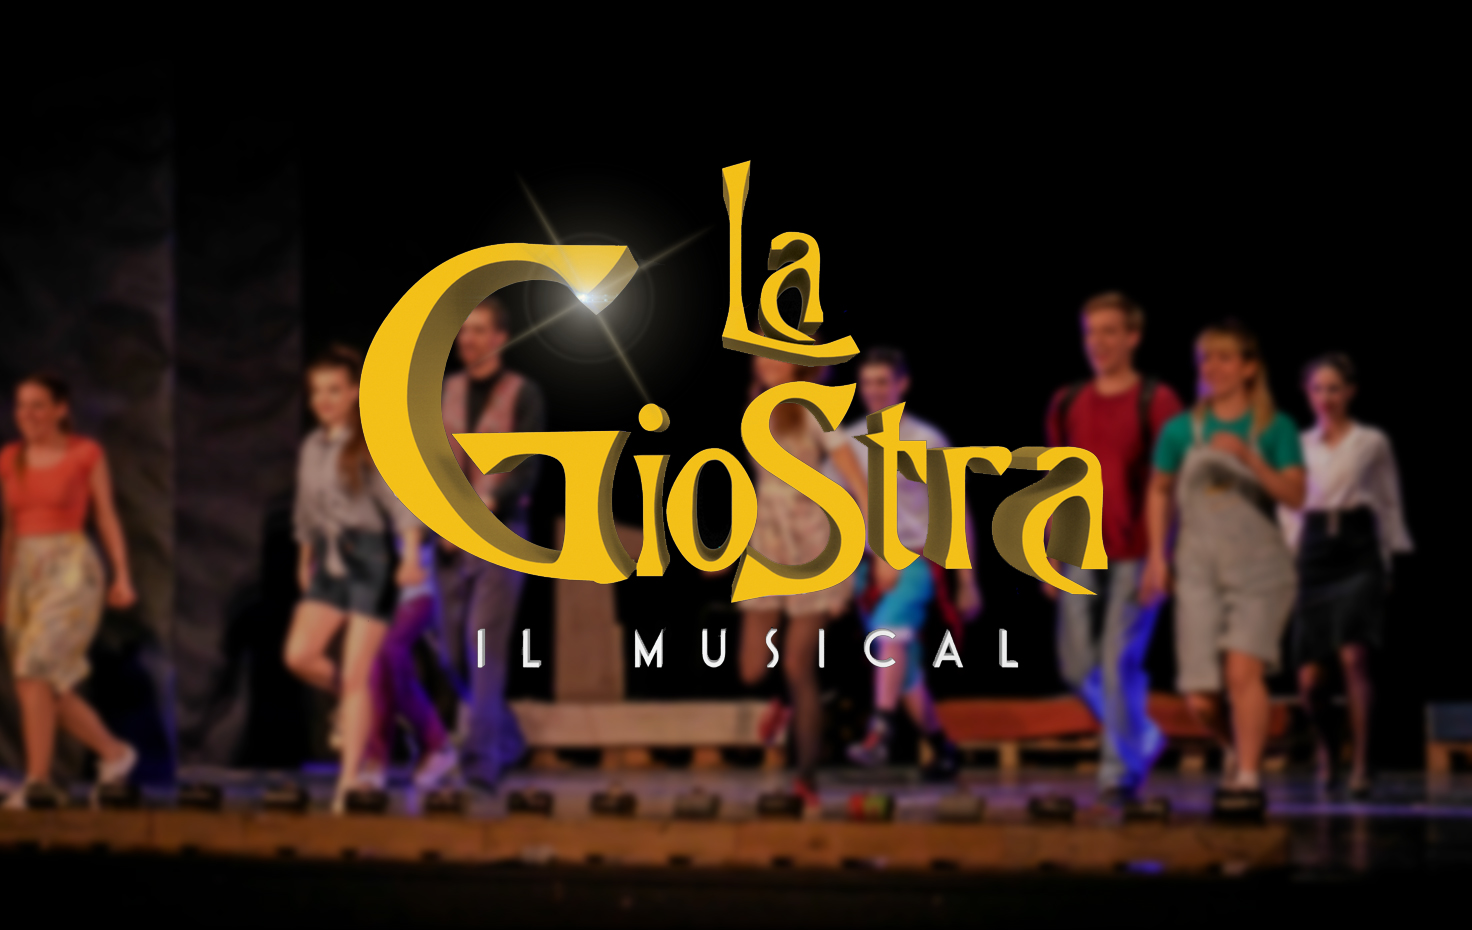 La Giostra, il musical